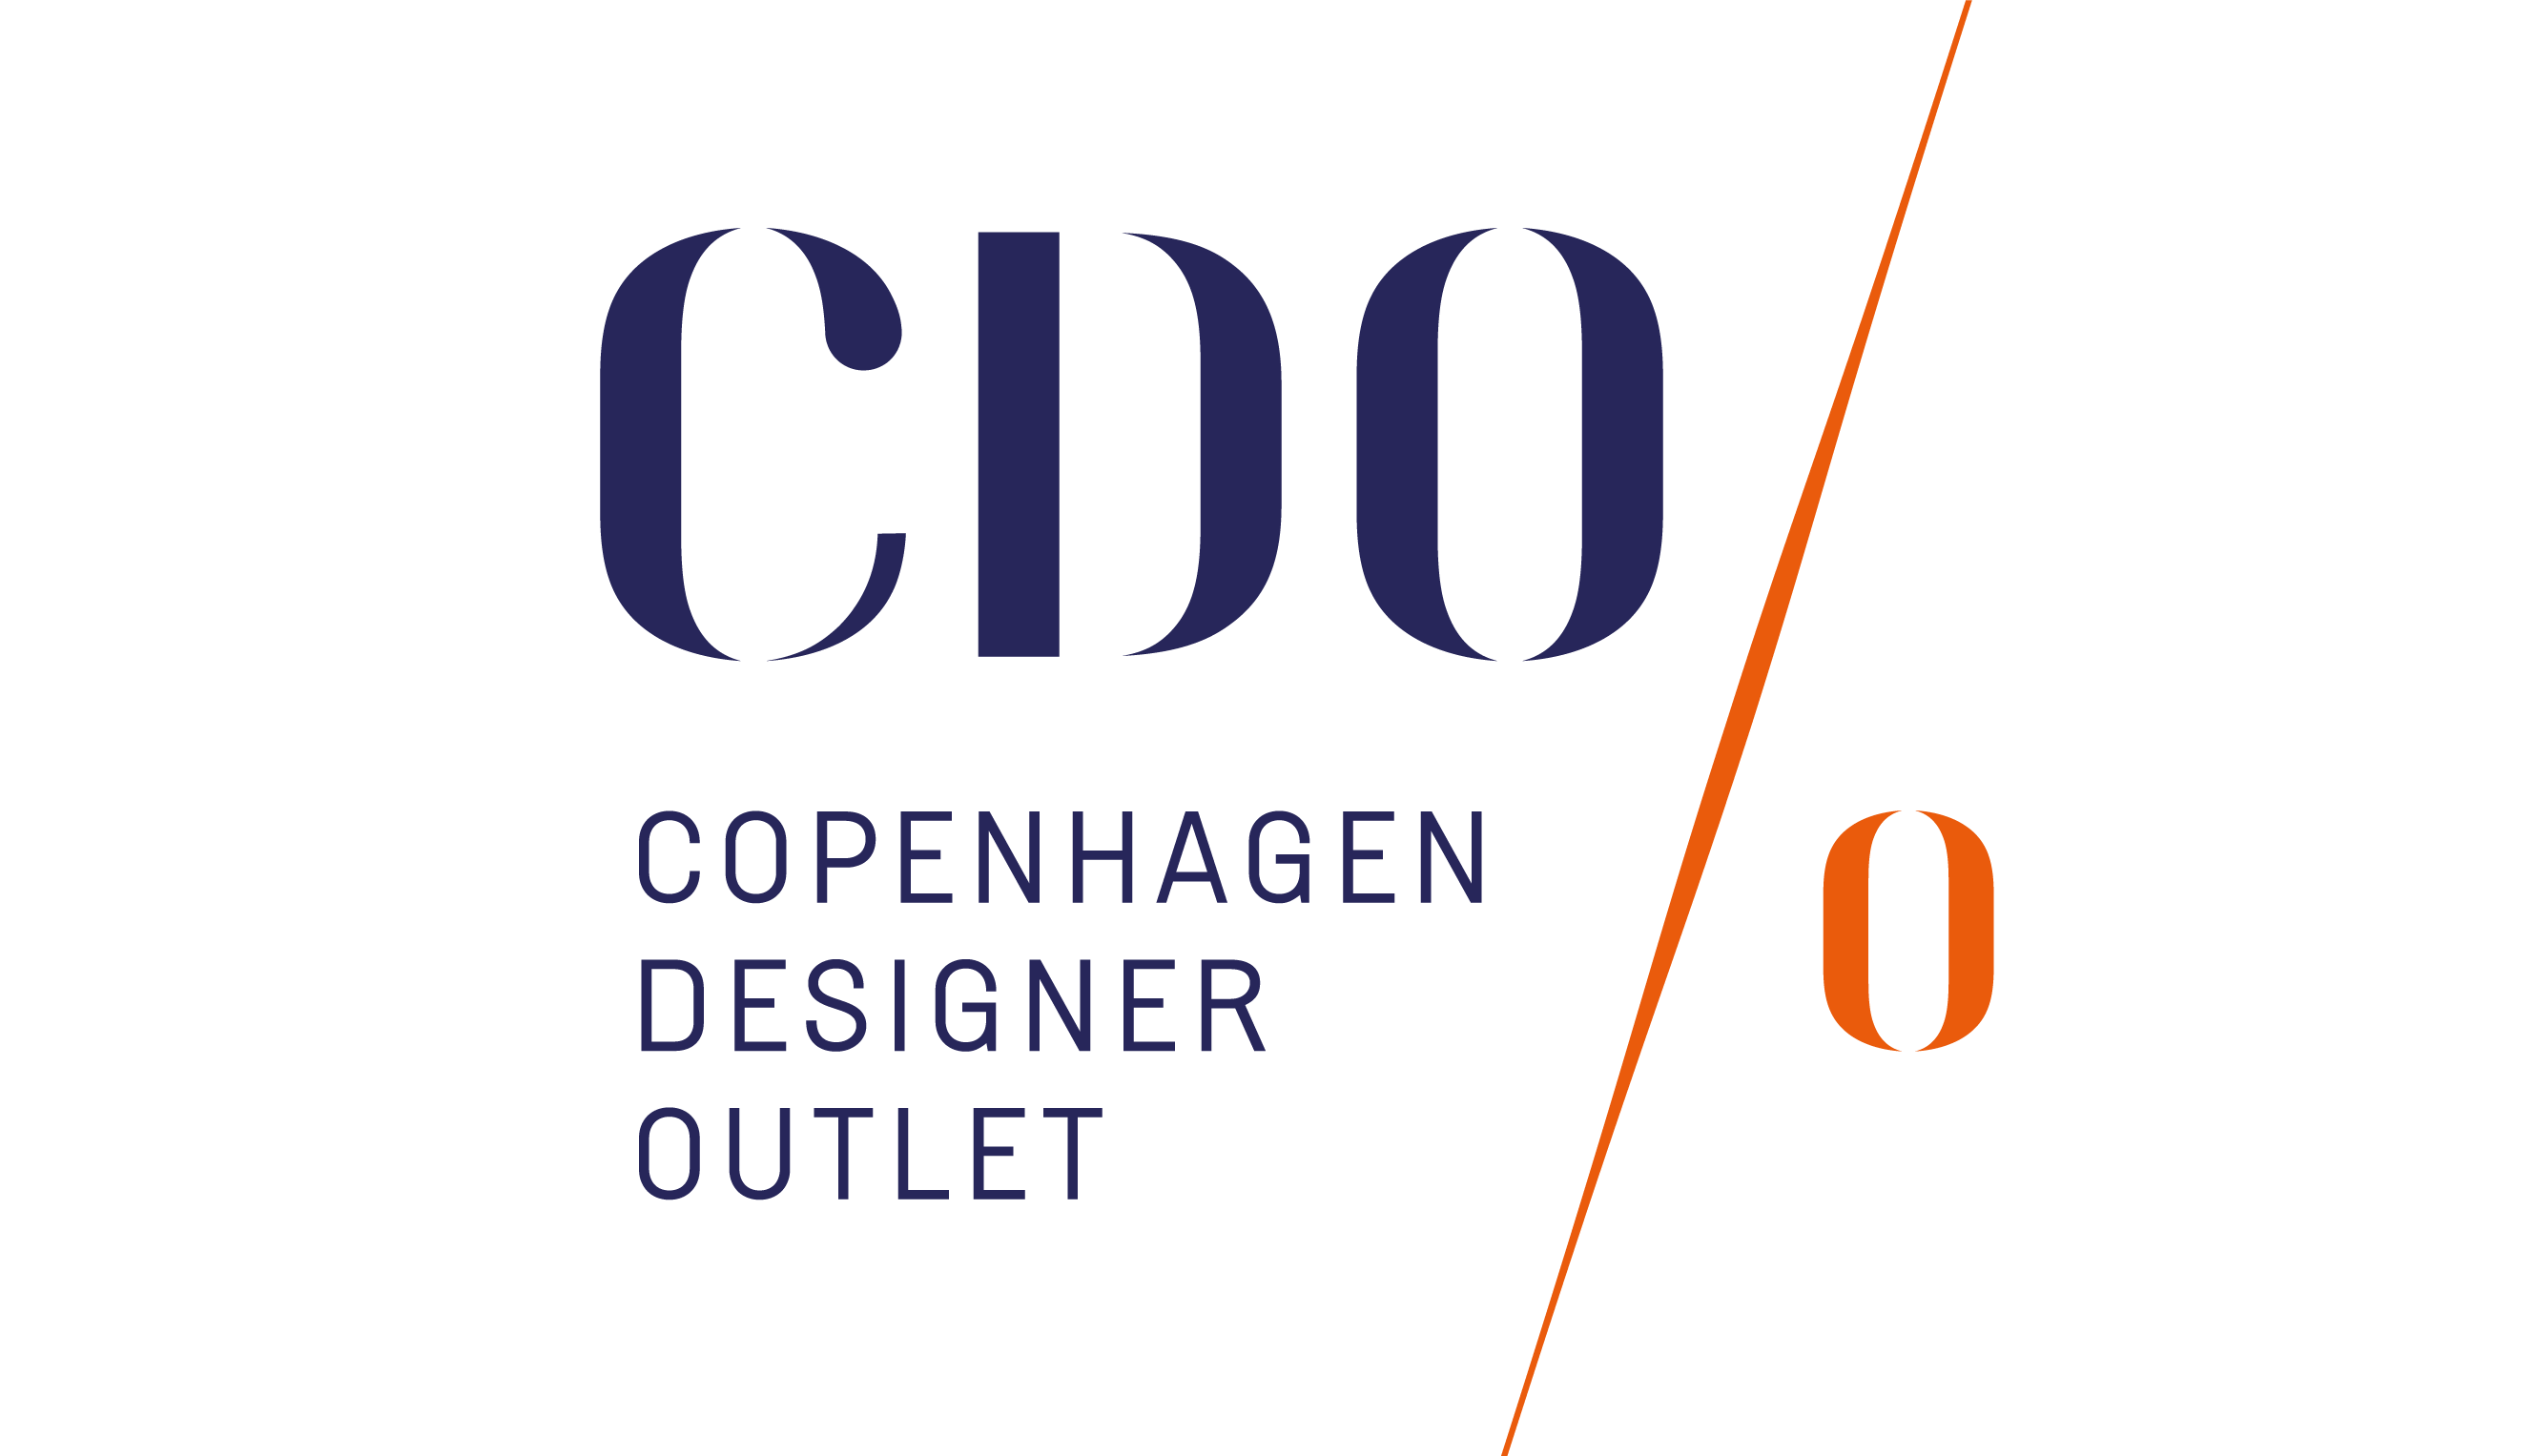 Copenhagen Designer Outlet i Op til 70% på mærketøj